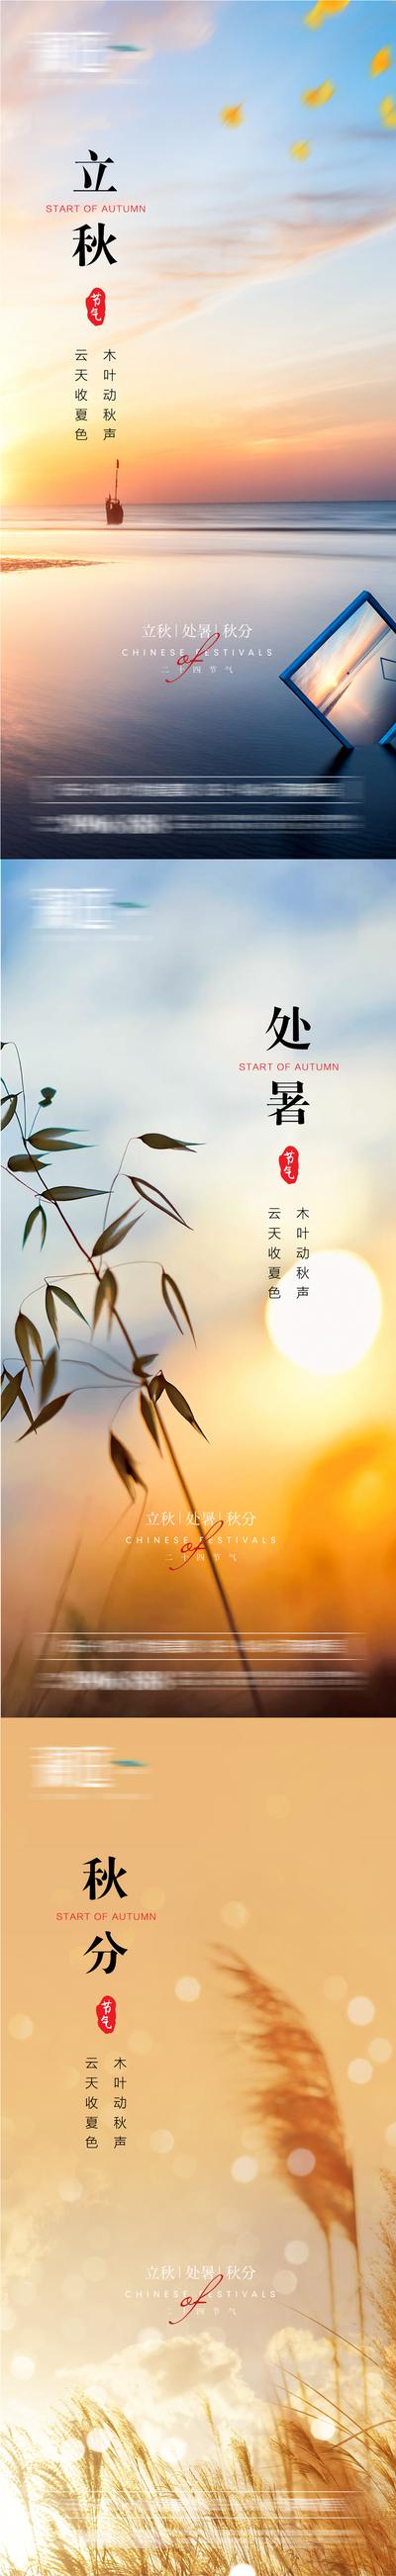 南门网 海报 二十四节气  立秋 处暑 秋分  黄昏 系列